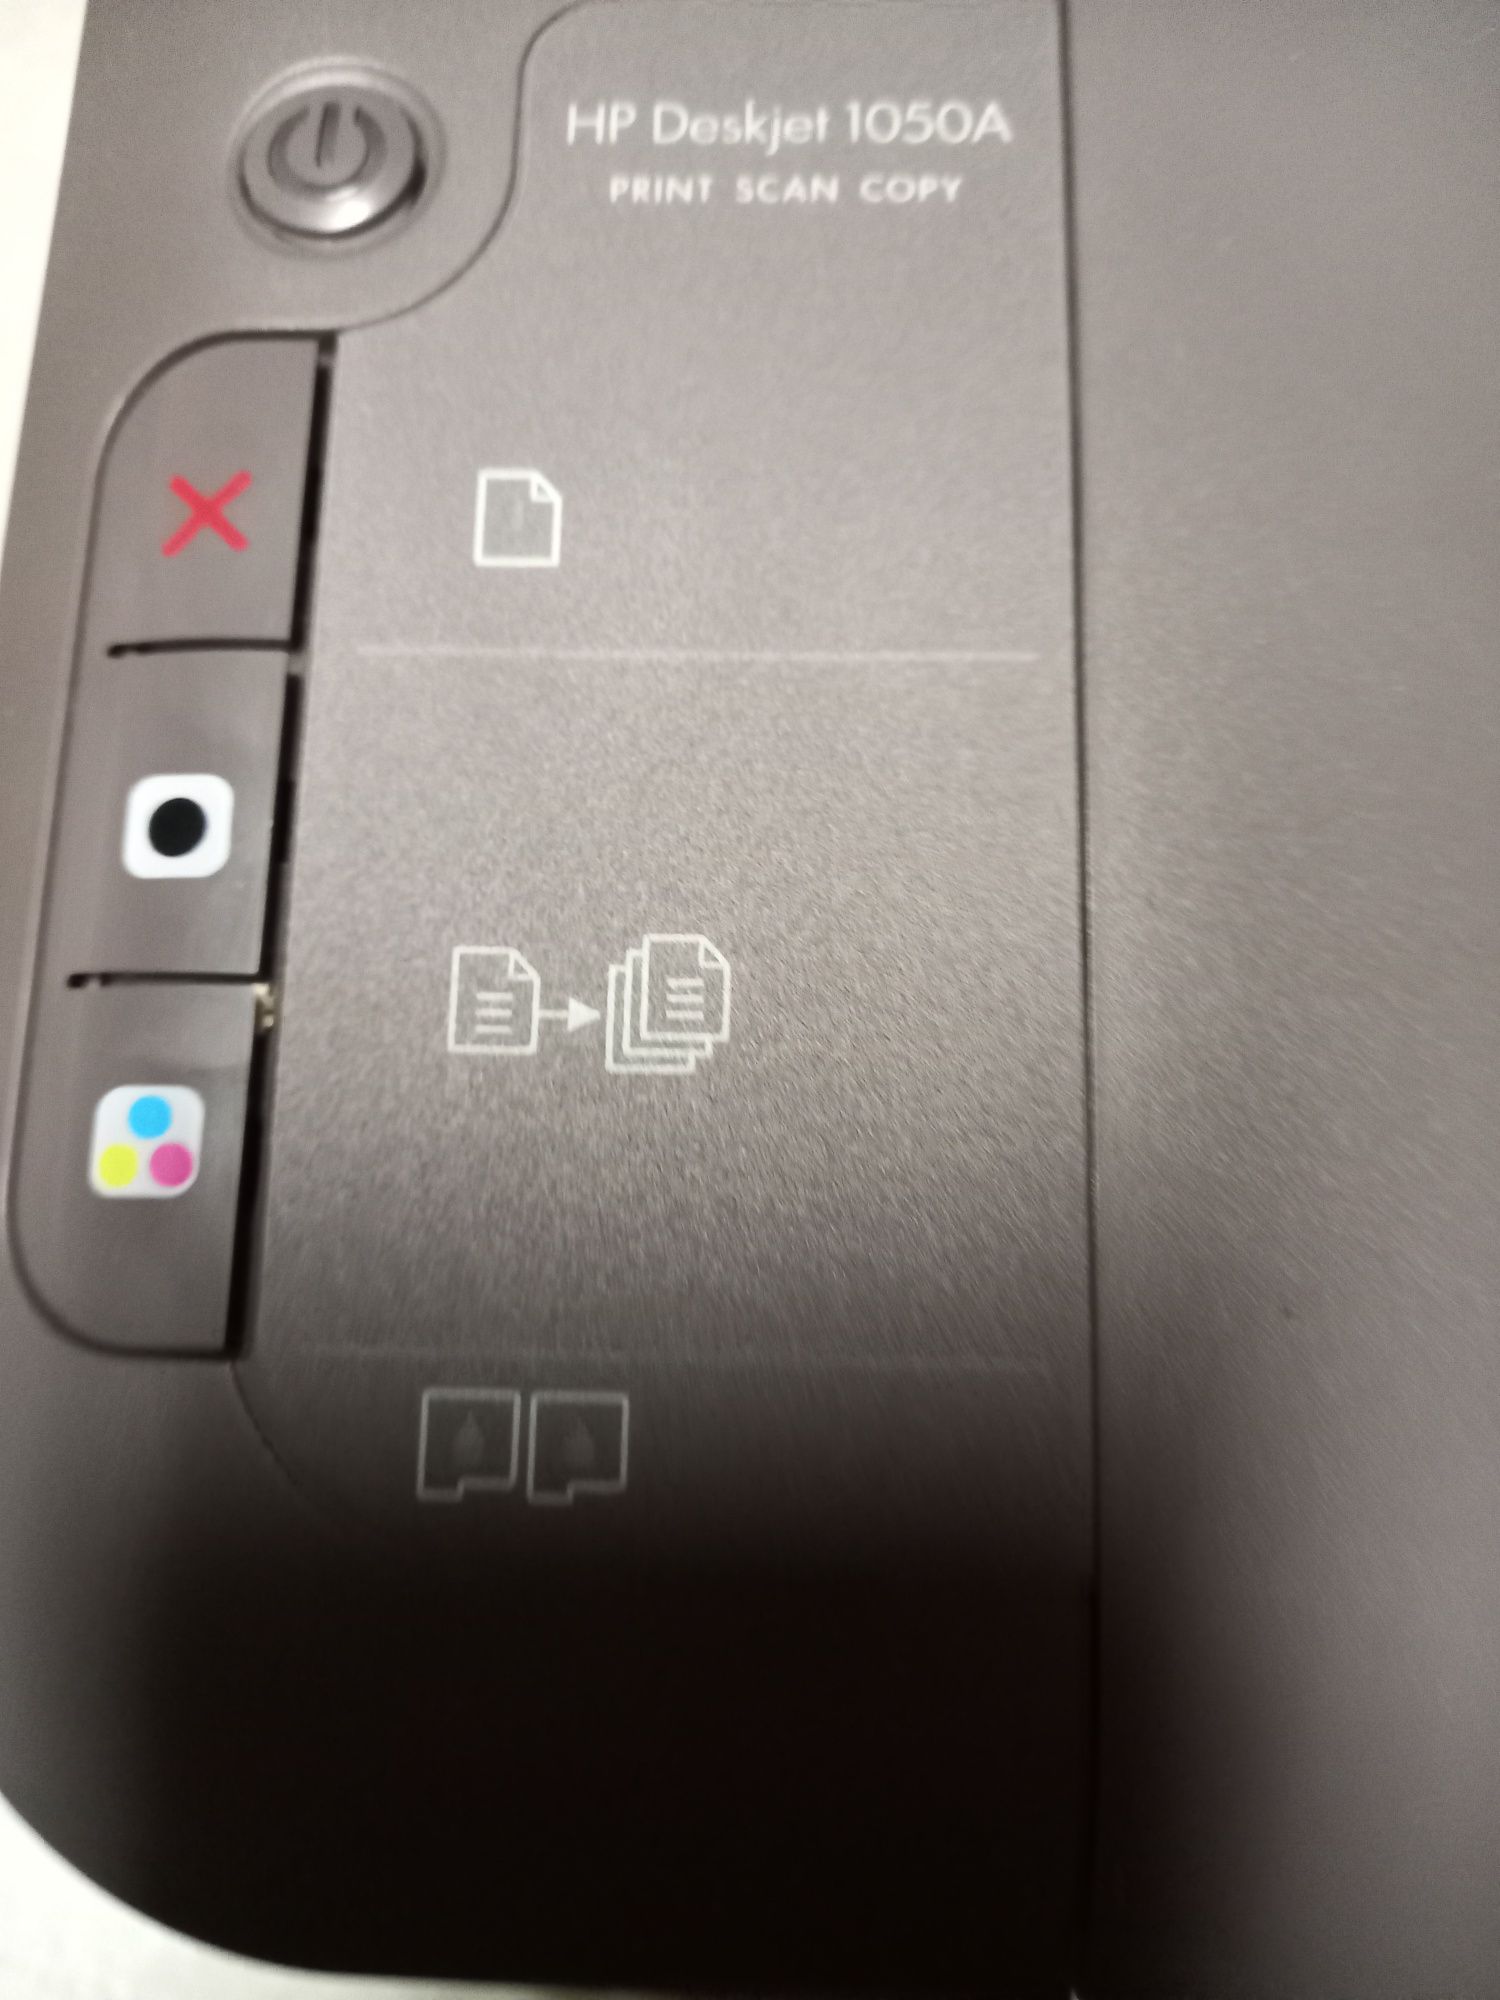 Impressora  HP  a funcionar, digitaliza e fotocopia